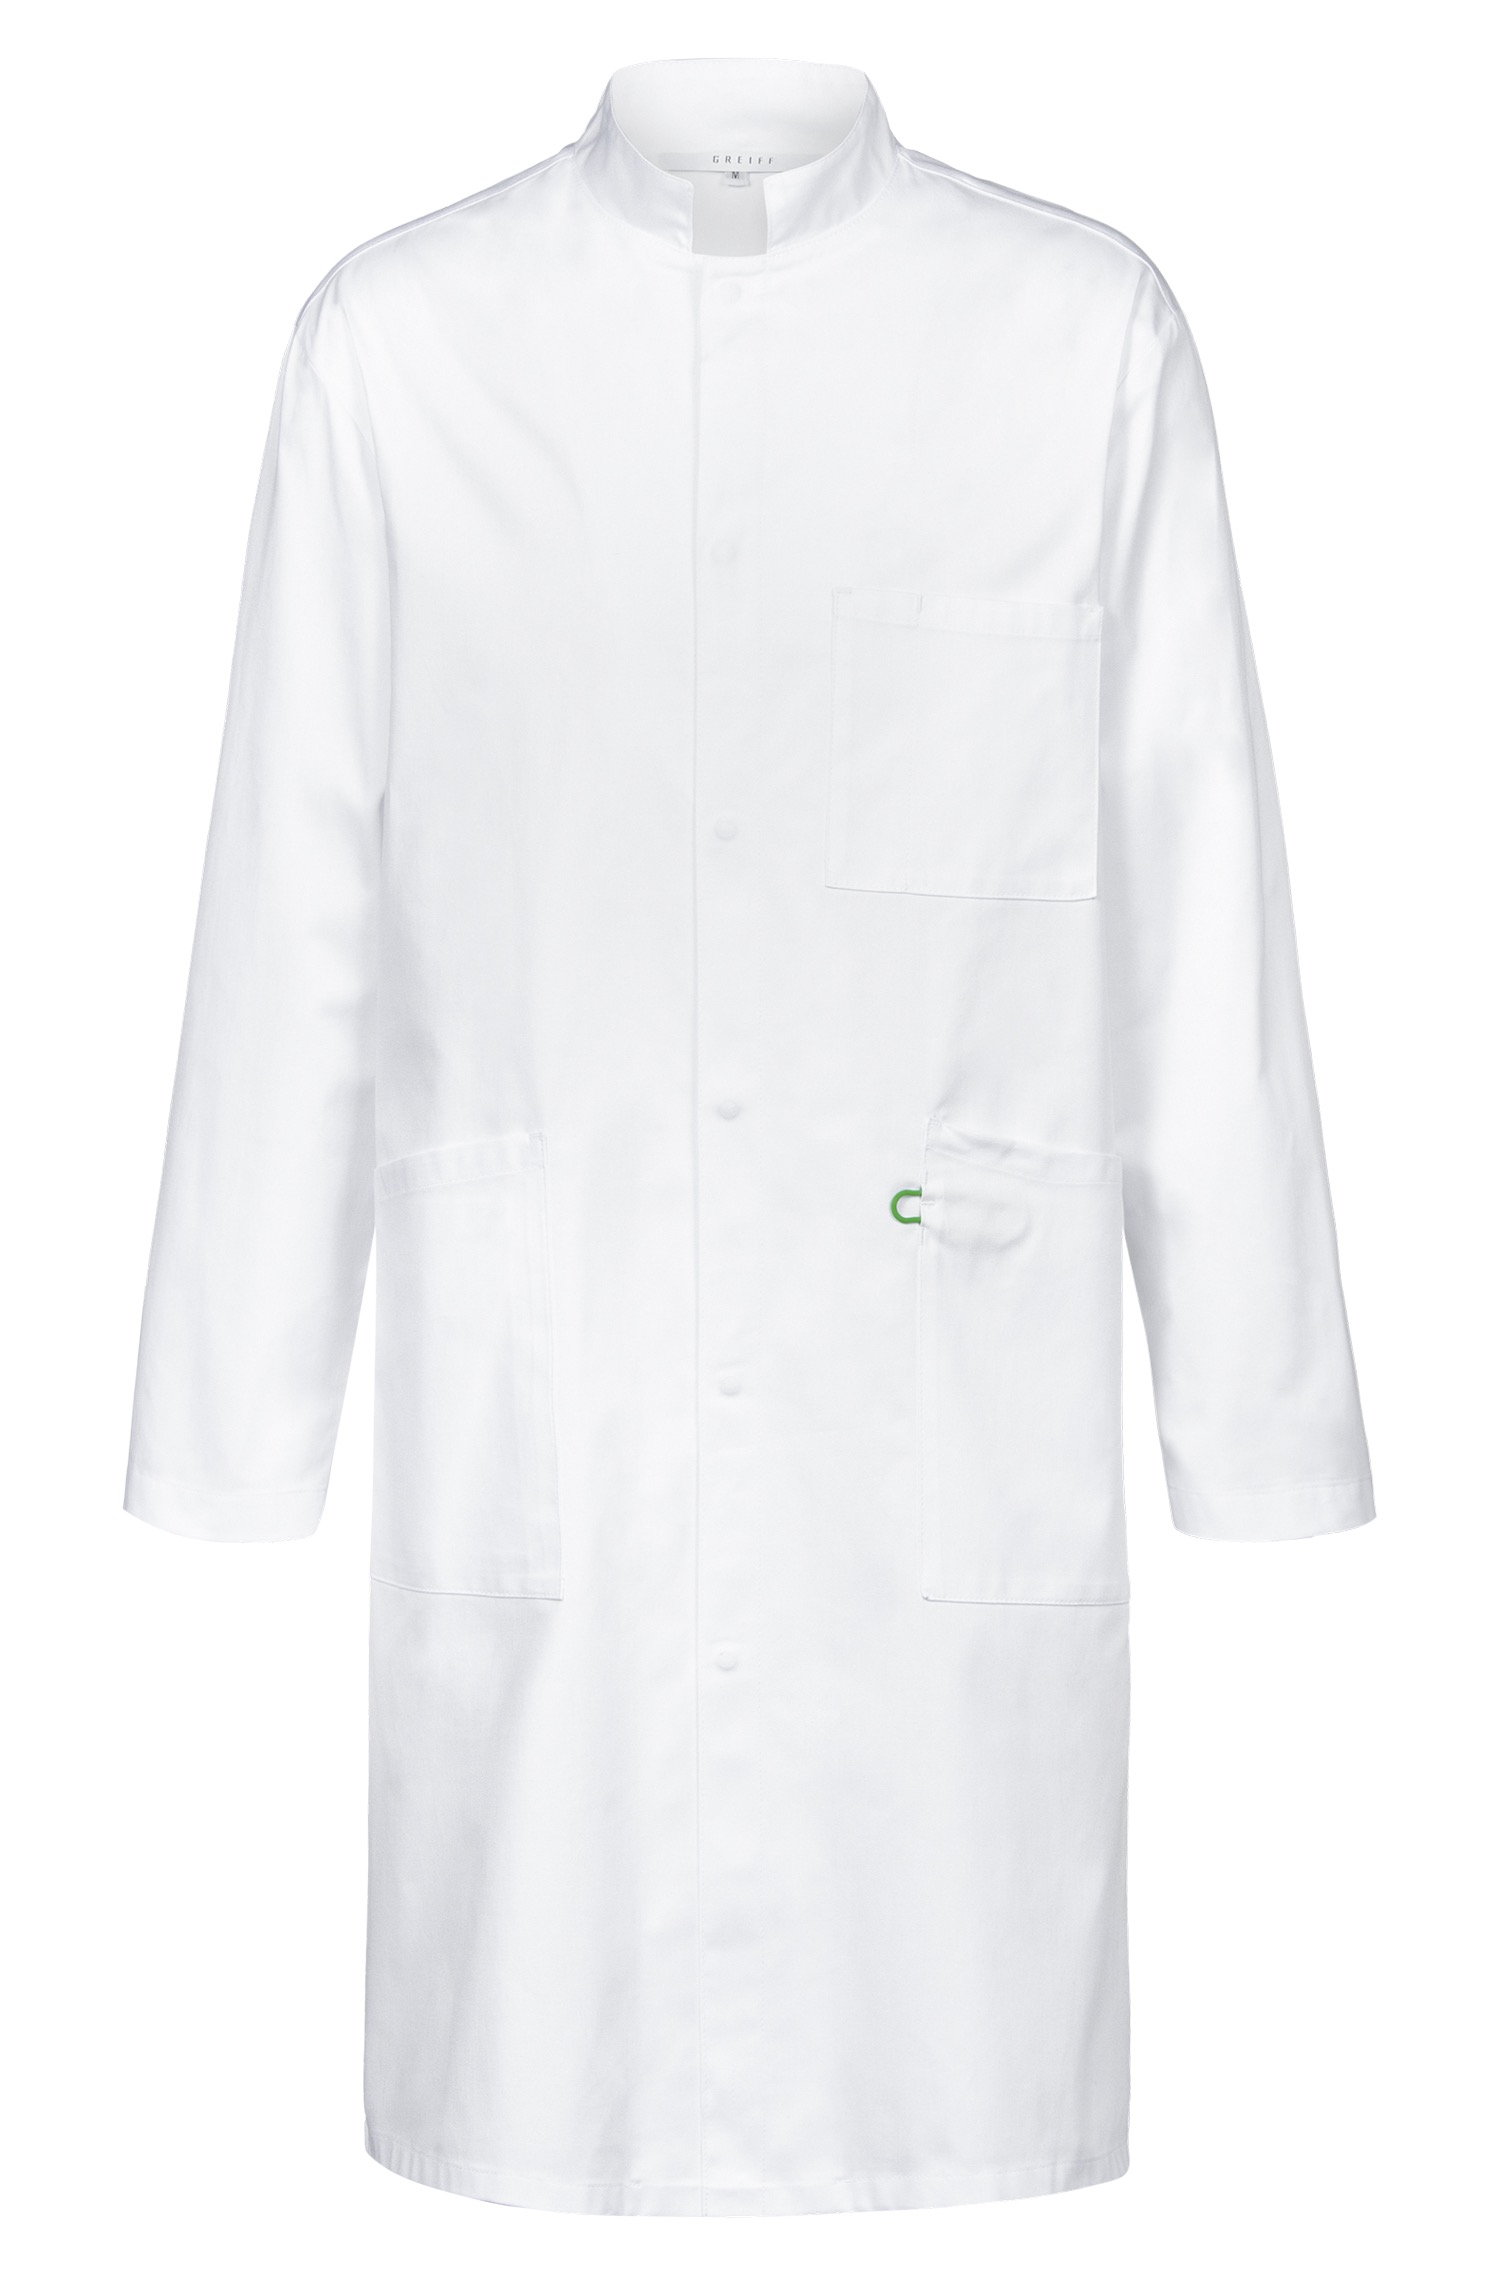 Premium Men's Lab Coat Cotton Regular Fit 5026 Greiff® White L